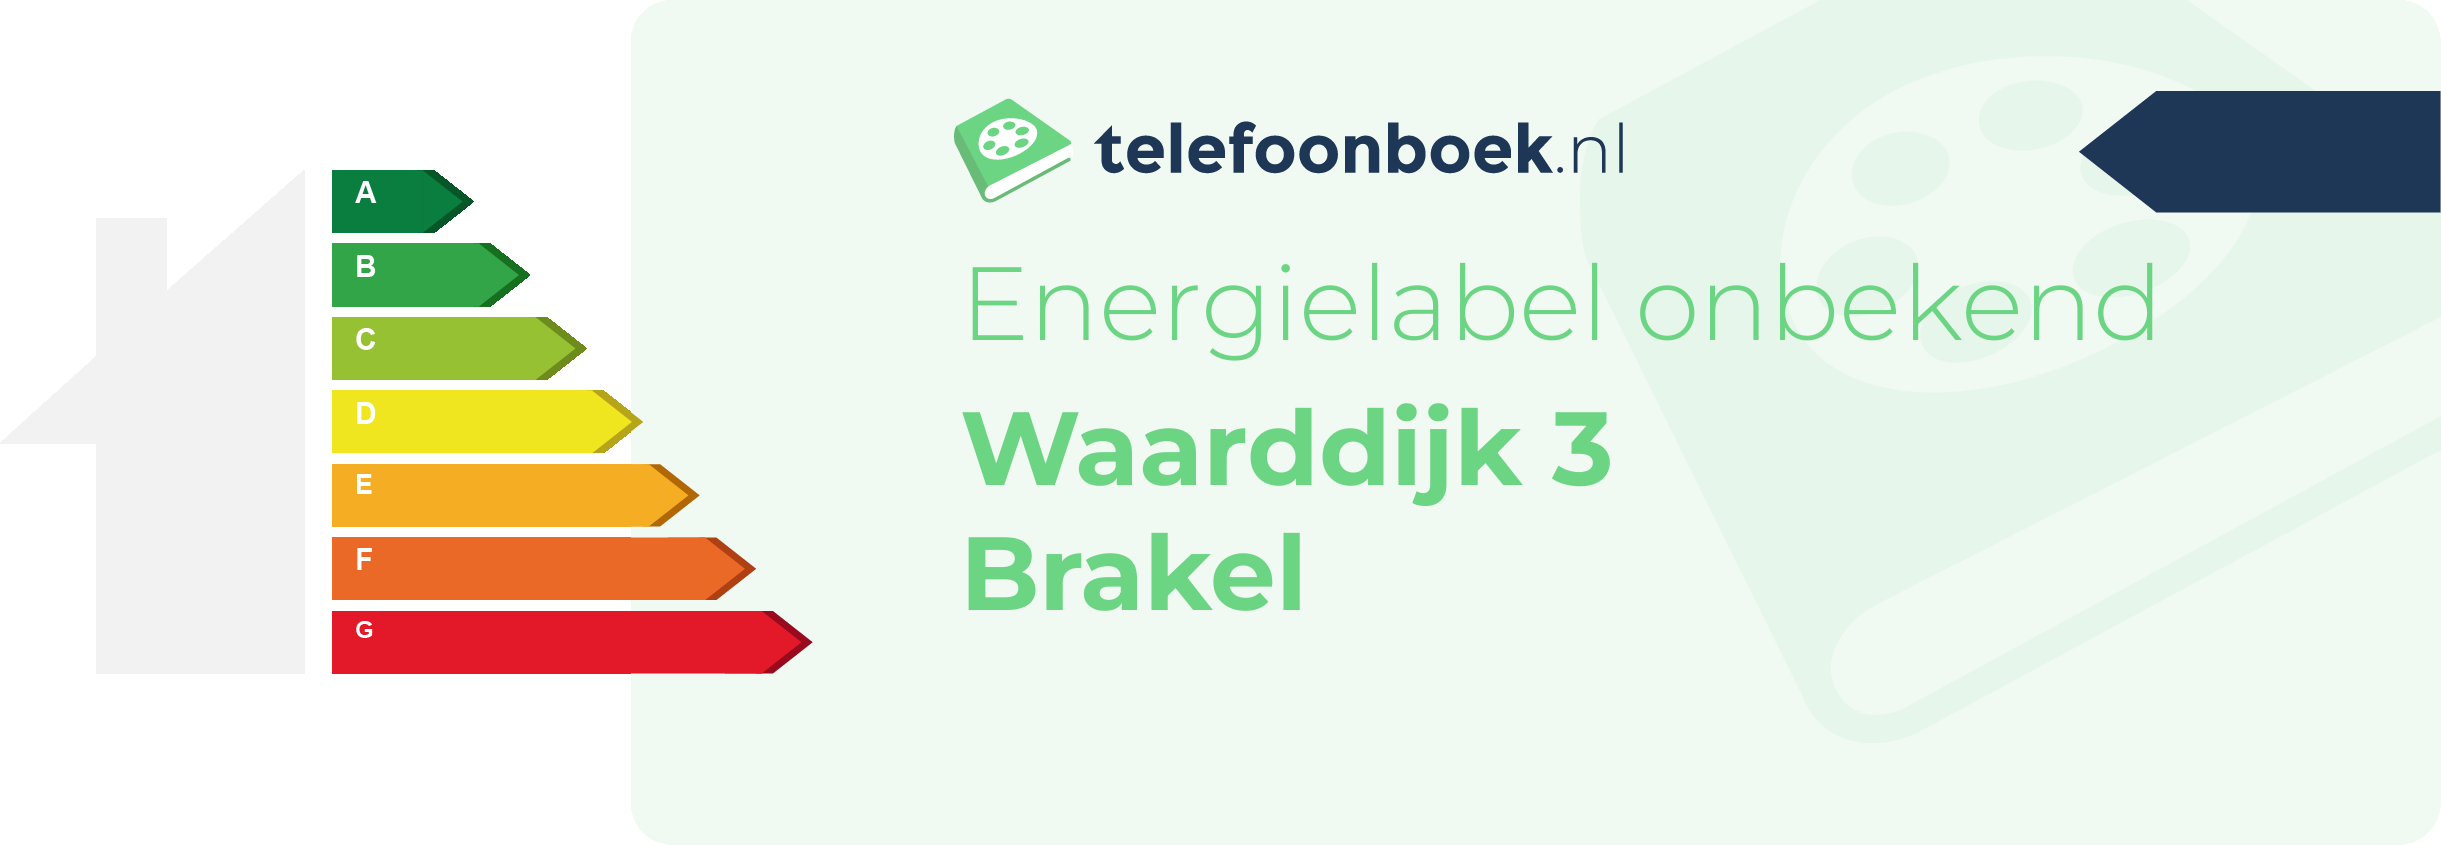 Energielabel Waarddijk 3 Brakel